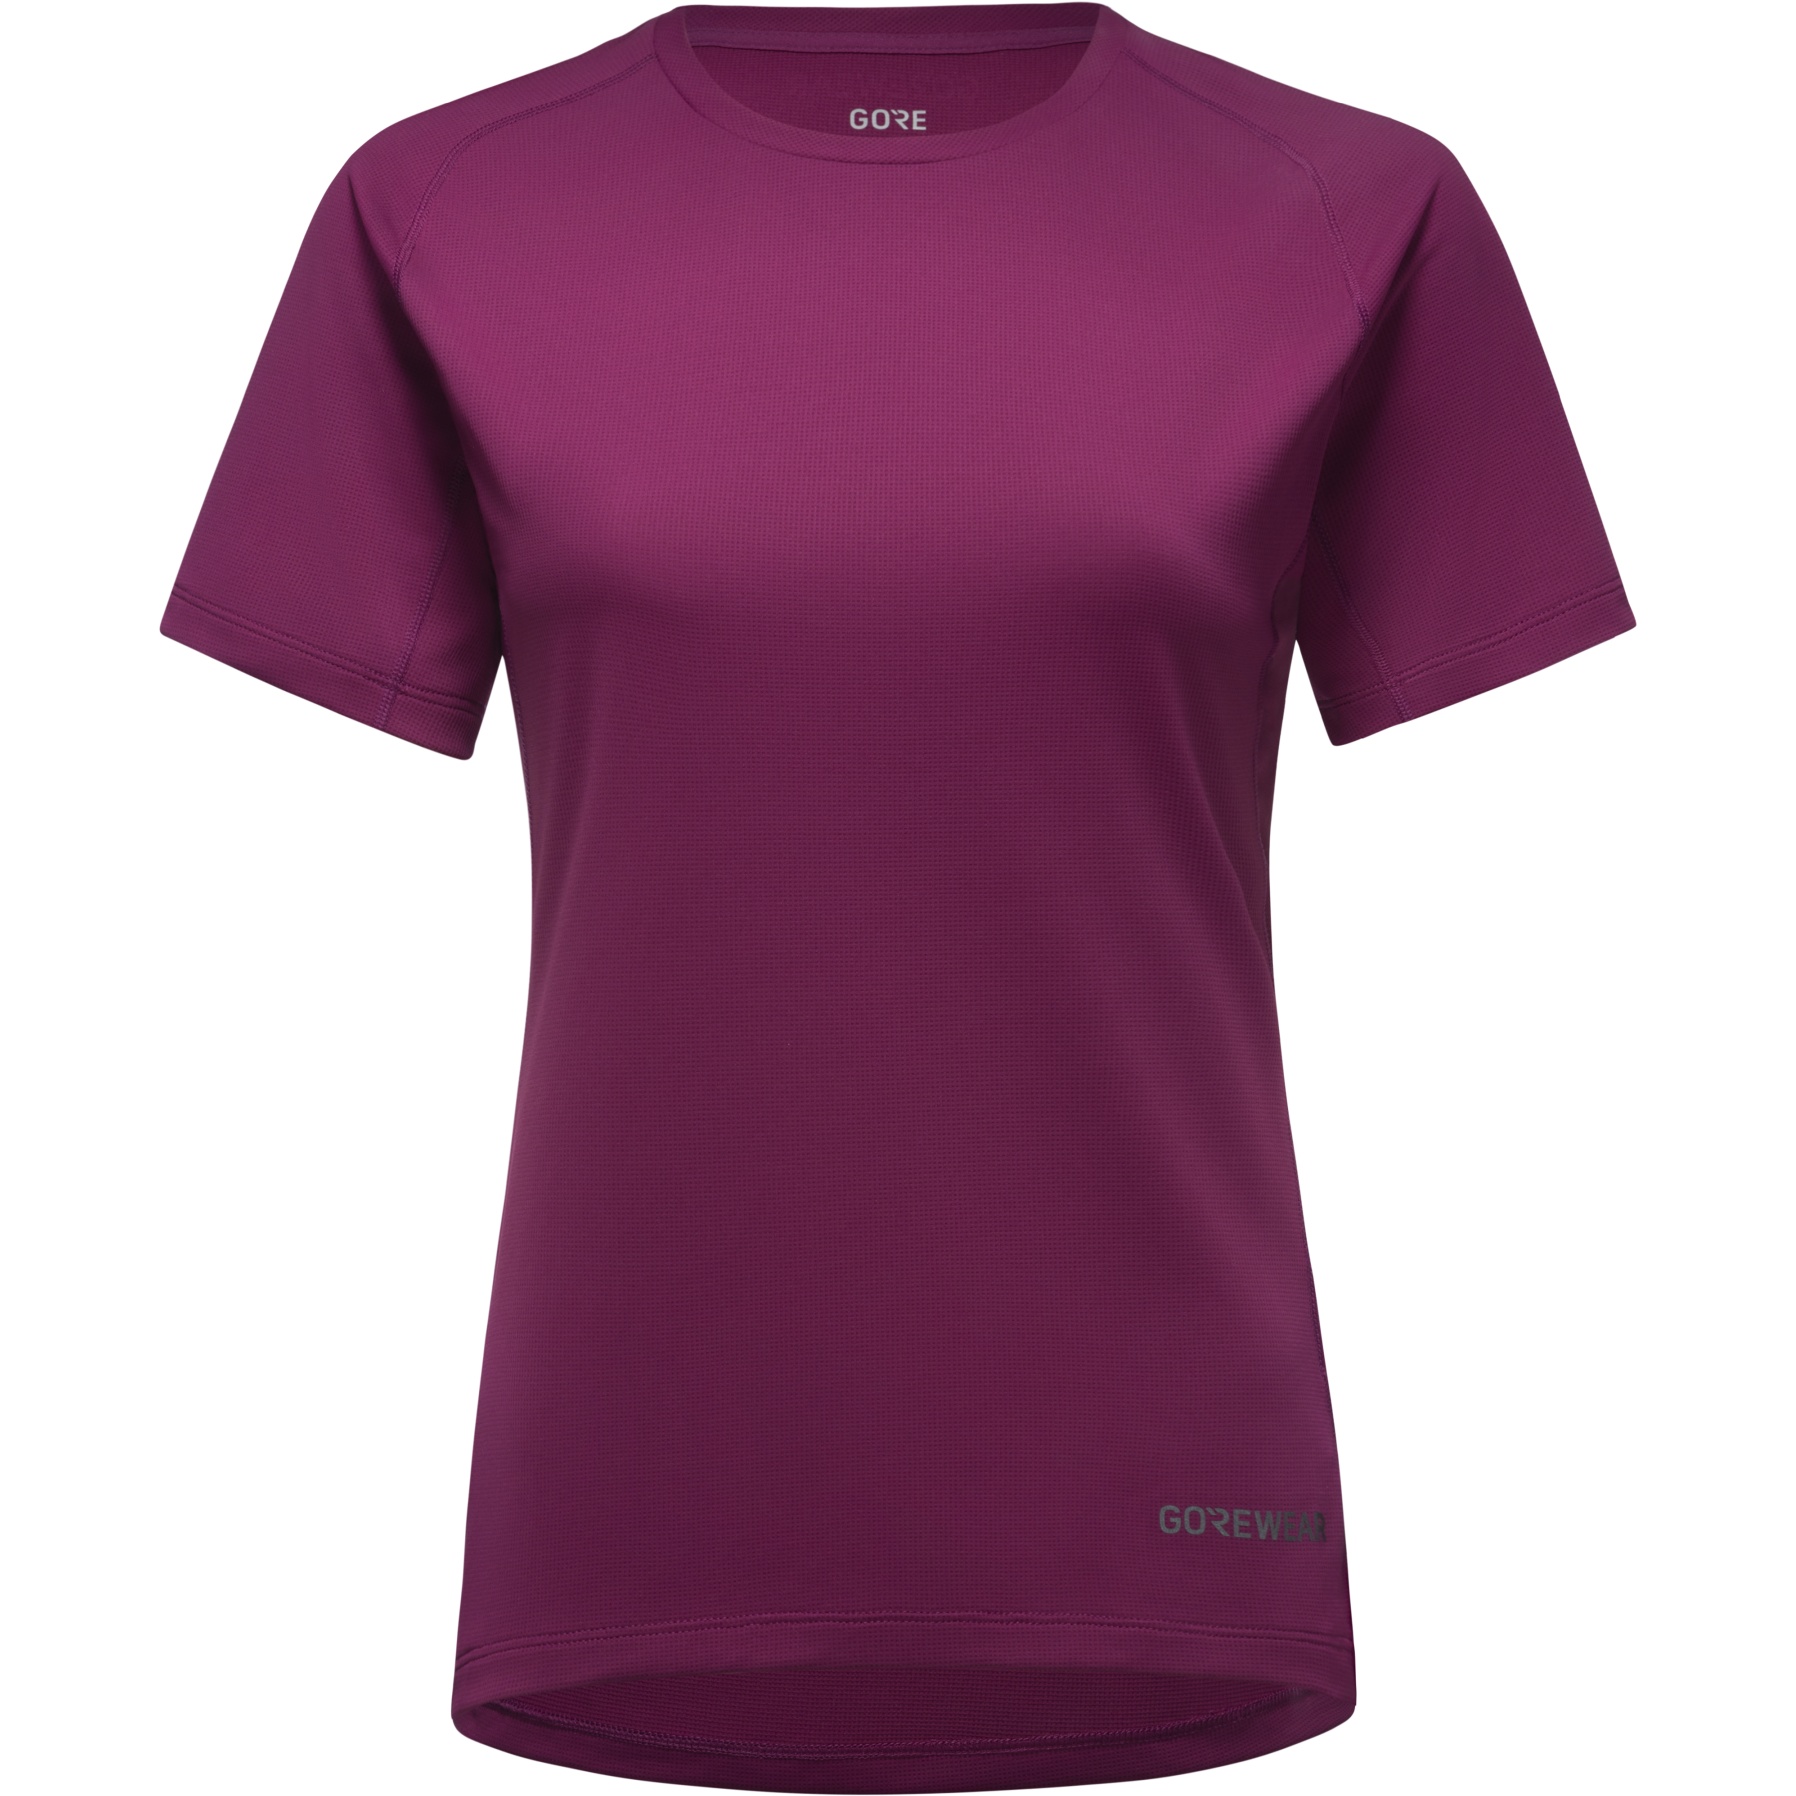 Produktbild von GOREWEAR Everyday T-Shirt Damen - process purple BQ00